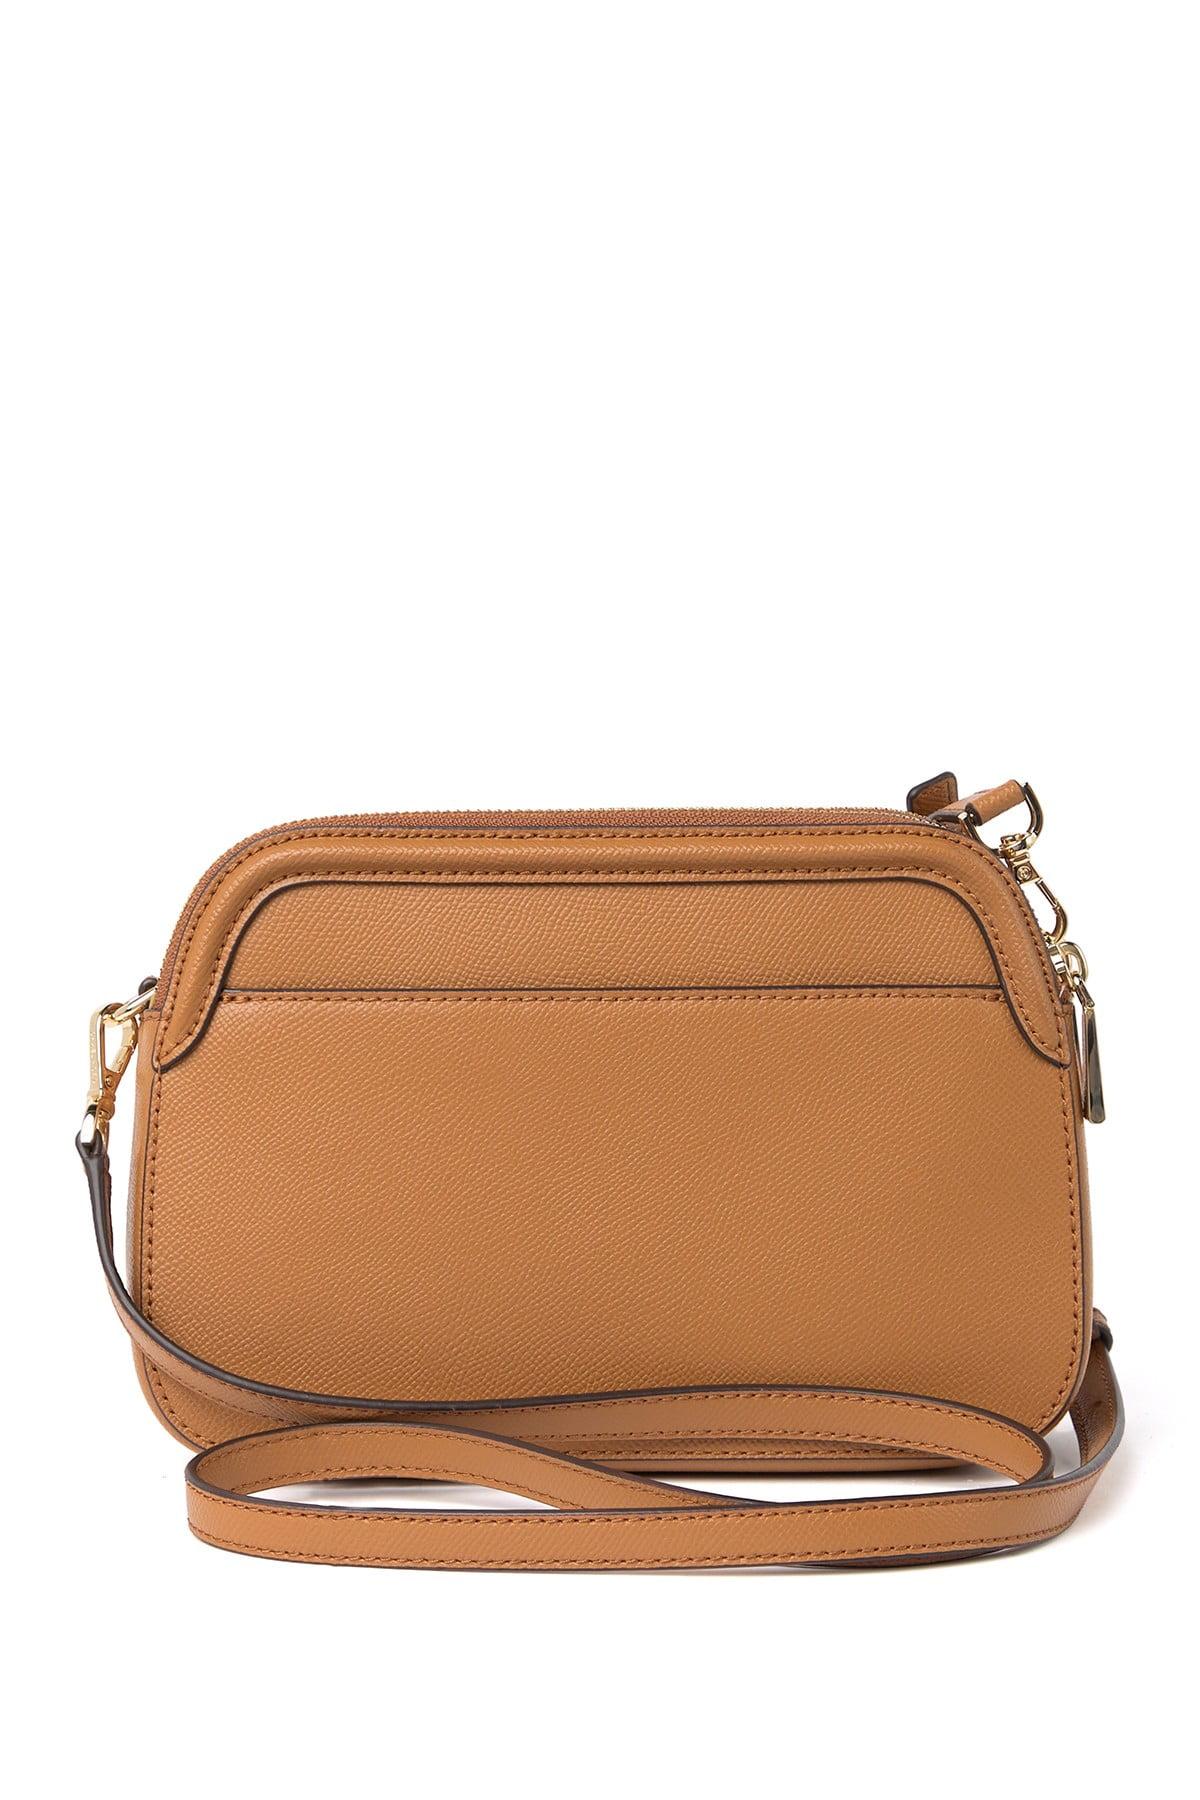 New Mk set 🖤 large chain shoulder & double zipper  Brown leather bag,  Soft leather bag, Michael kors shoulder bag